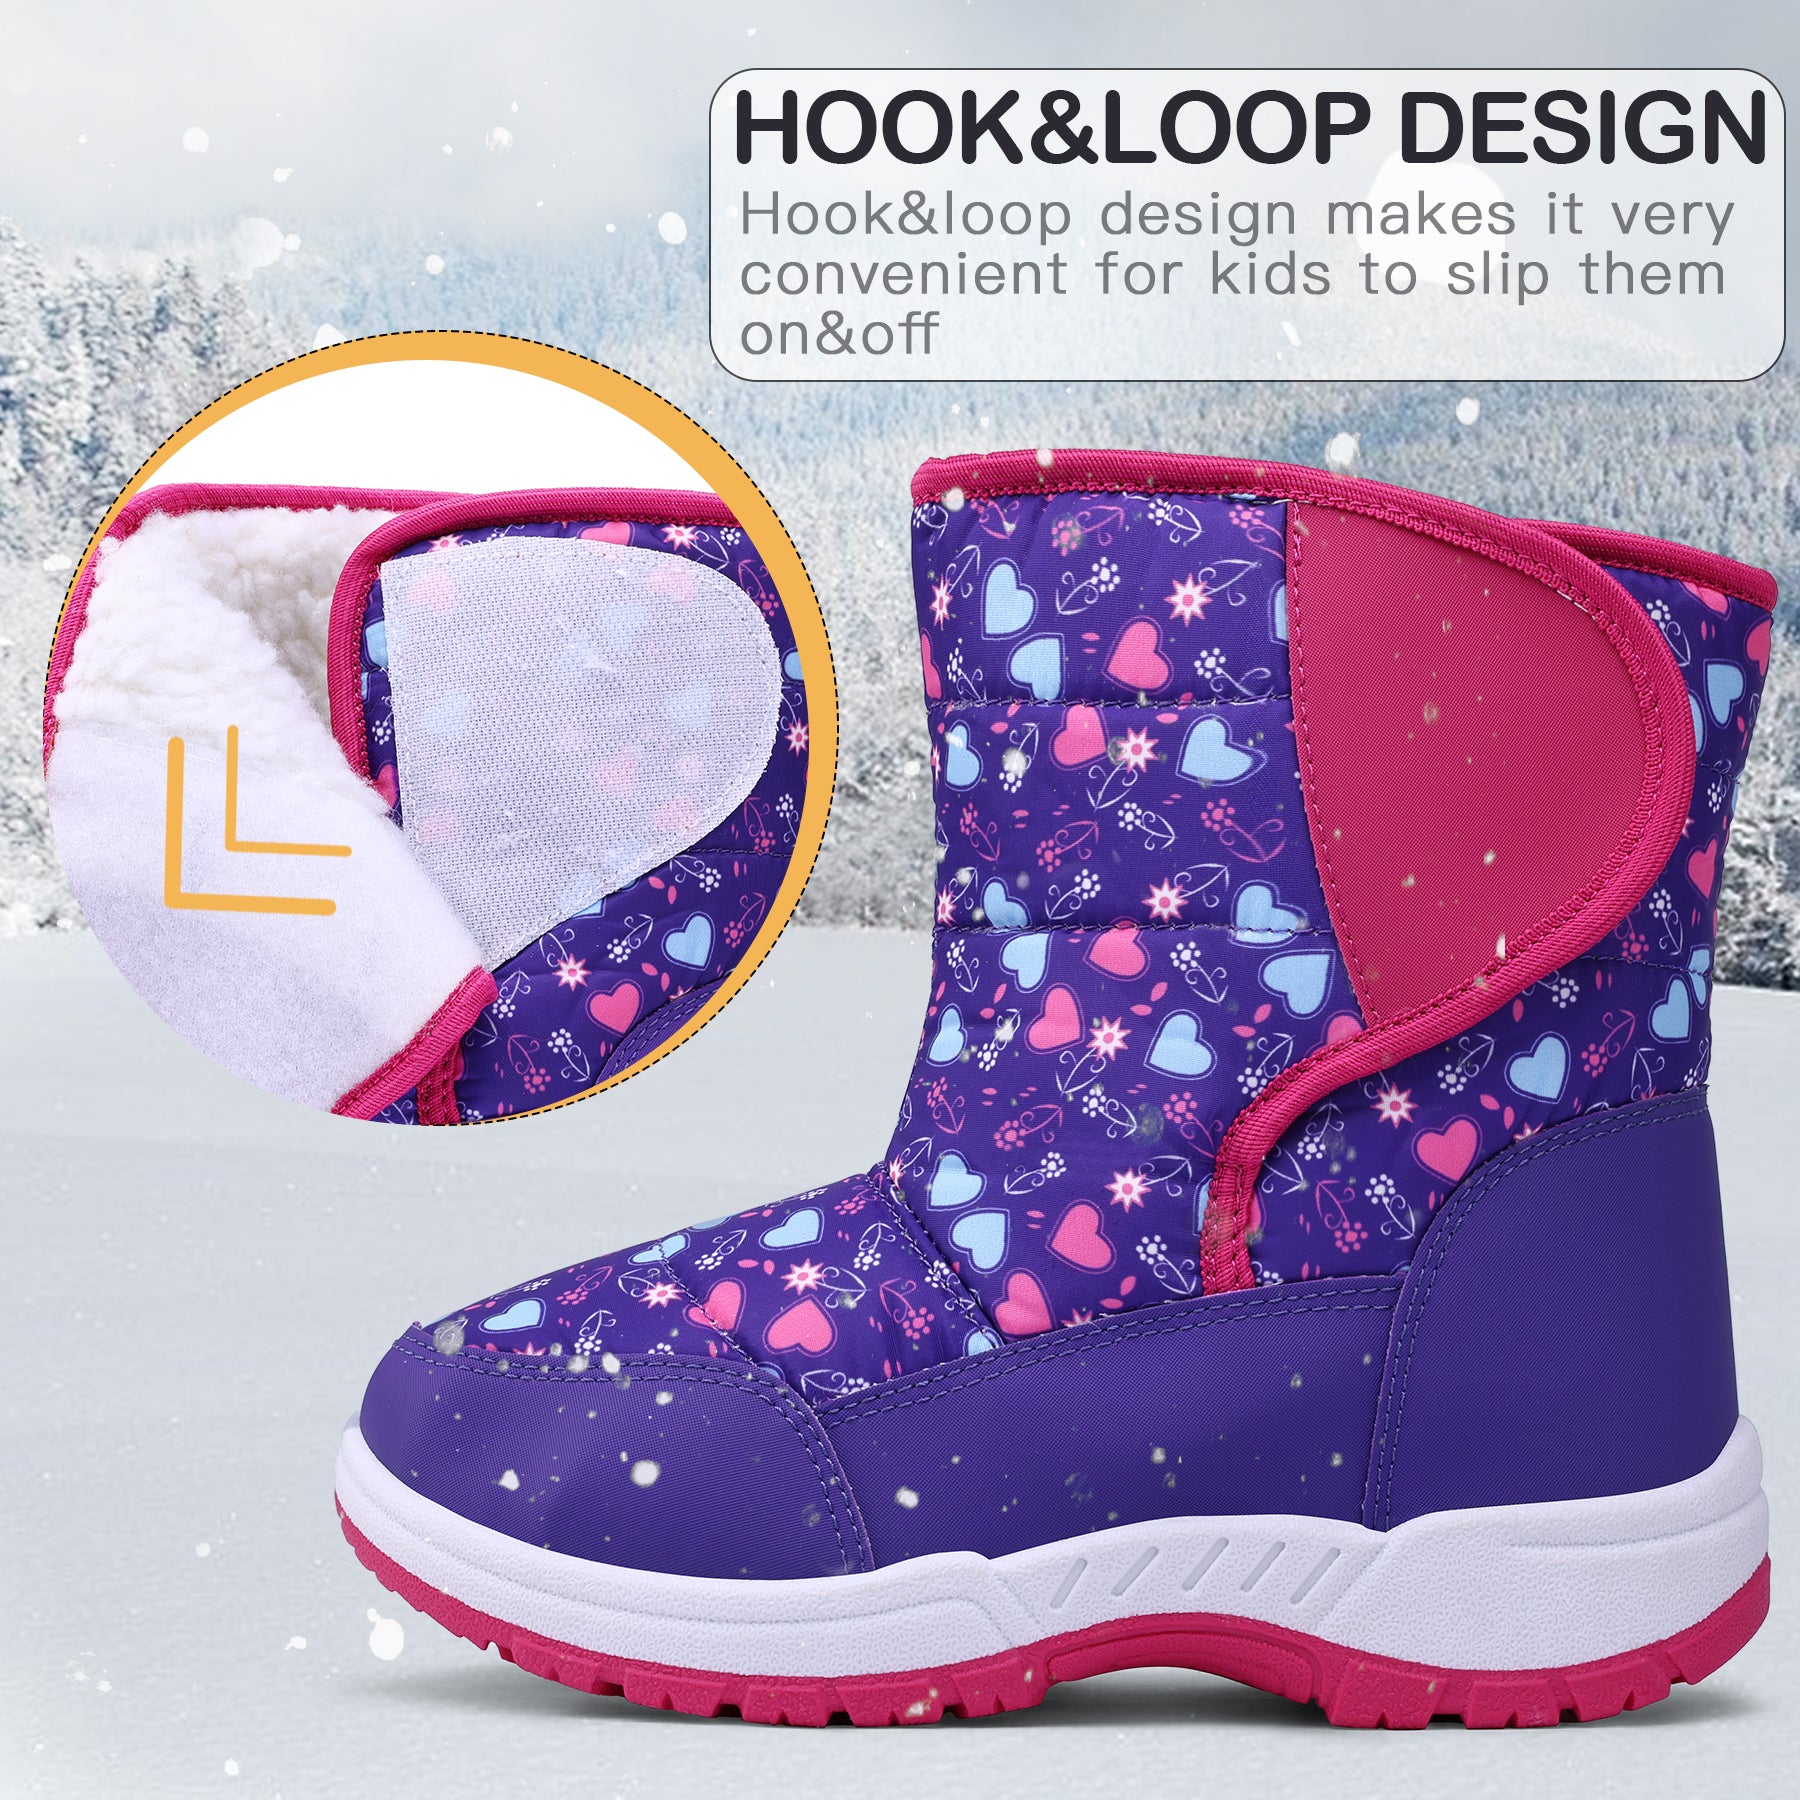 Purple Heart Fur Lined Waterproof Snow Boots - MYSOFT